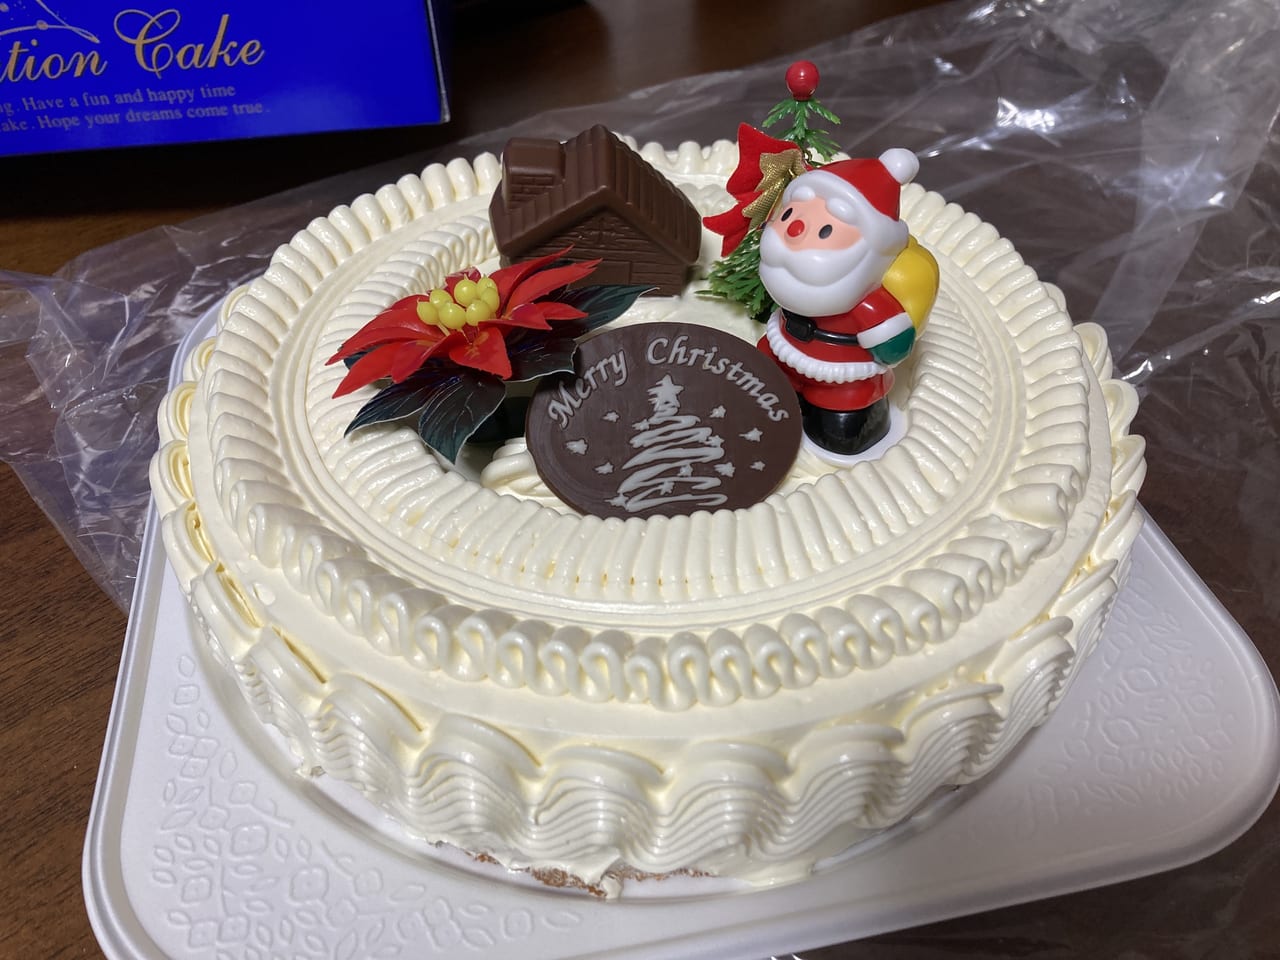 鳥取市 ラ ムー鳥取東店で販売中のクリスマスケーキ6号サイズを食べてみました 号外net 鳥取市 東部地域